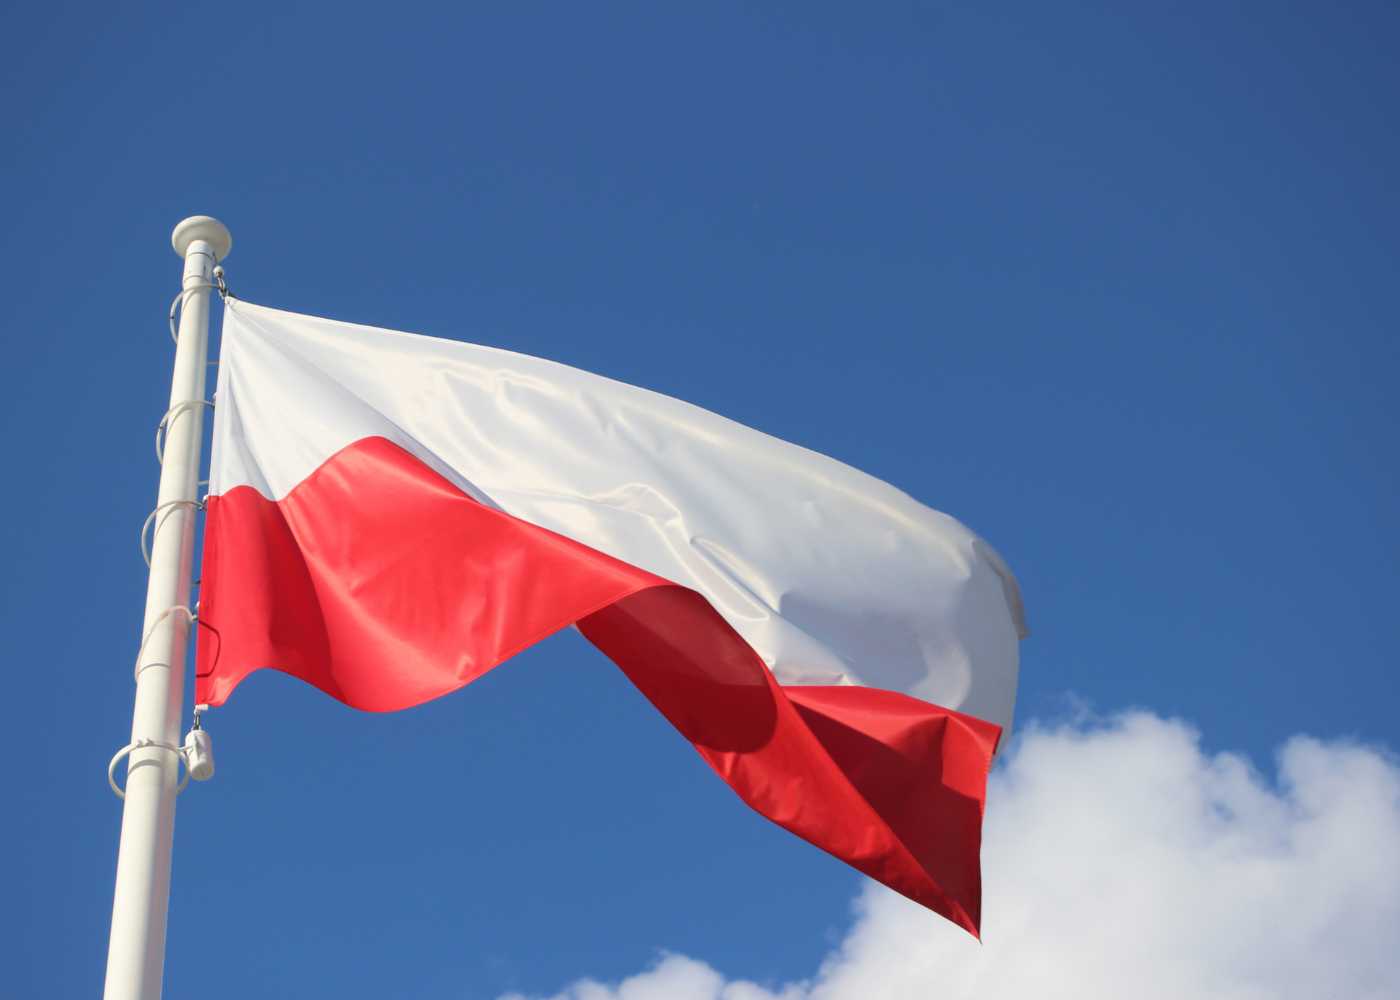 День Конституции Польши, дни открытых дверей в детсадах, «Дни Японии в Каунасе» и другие новости